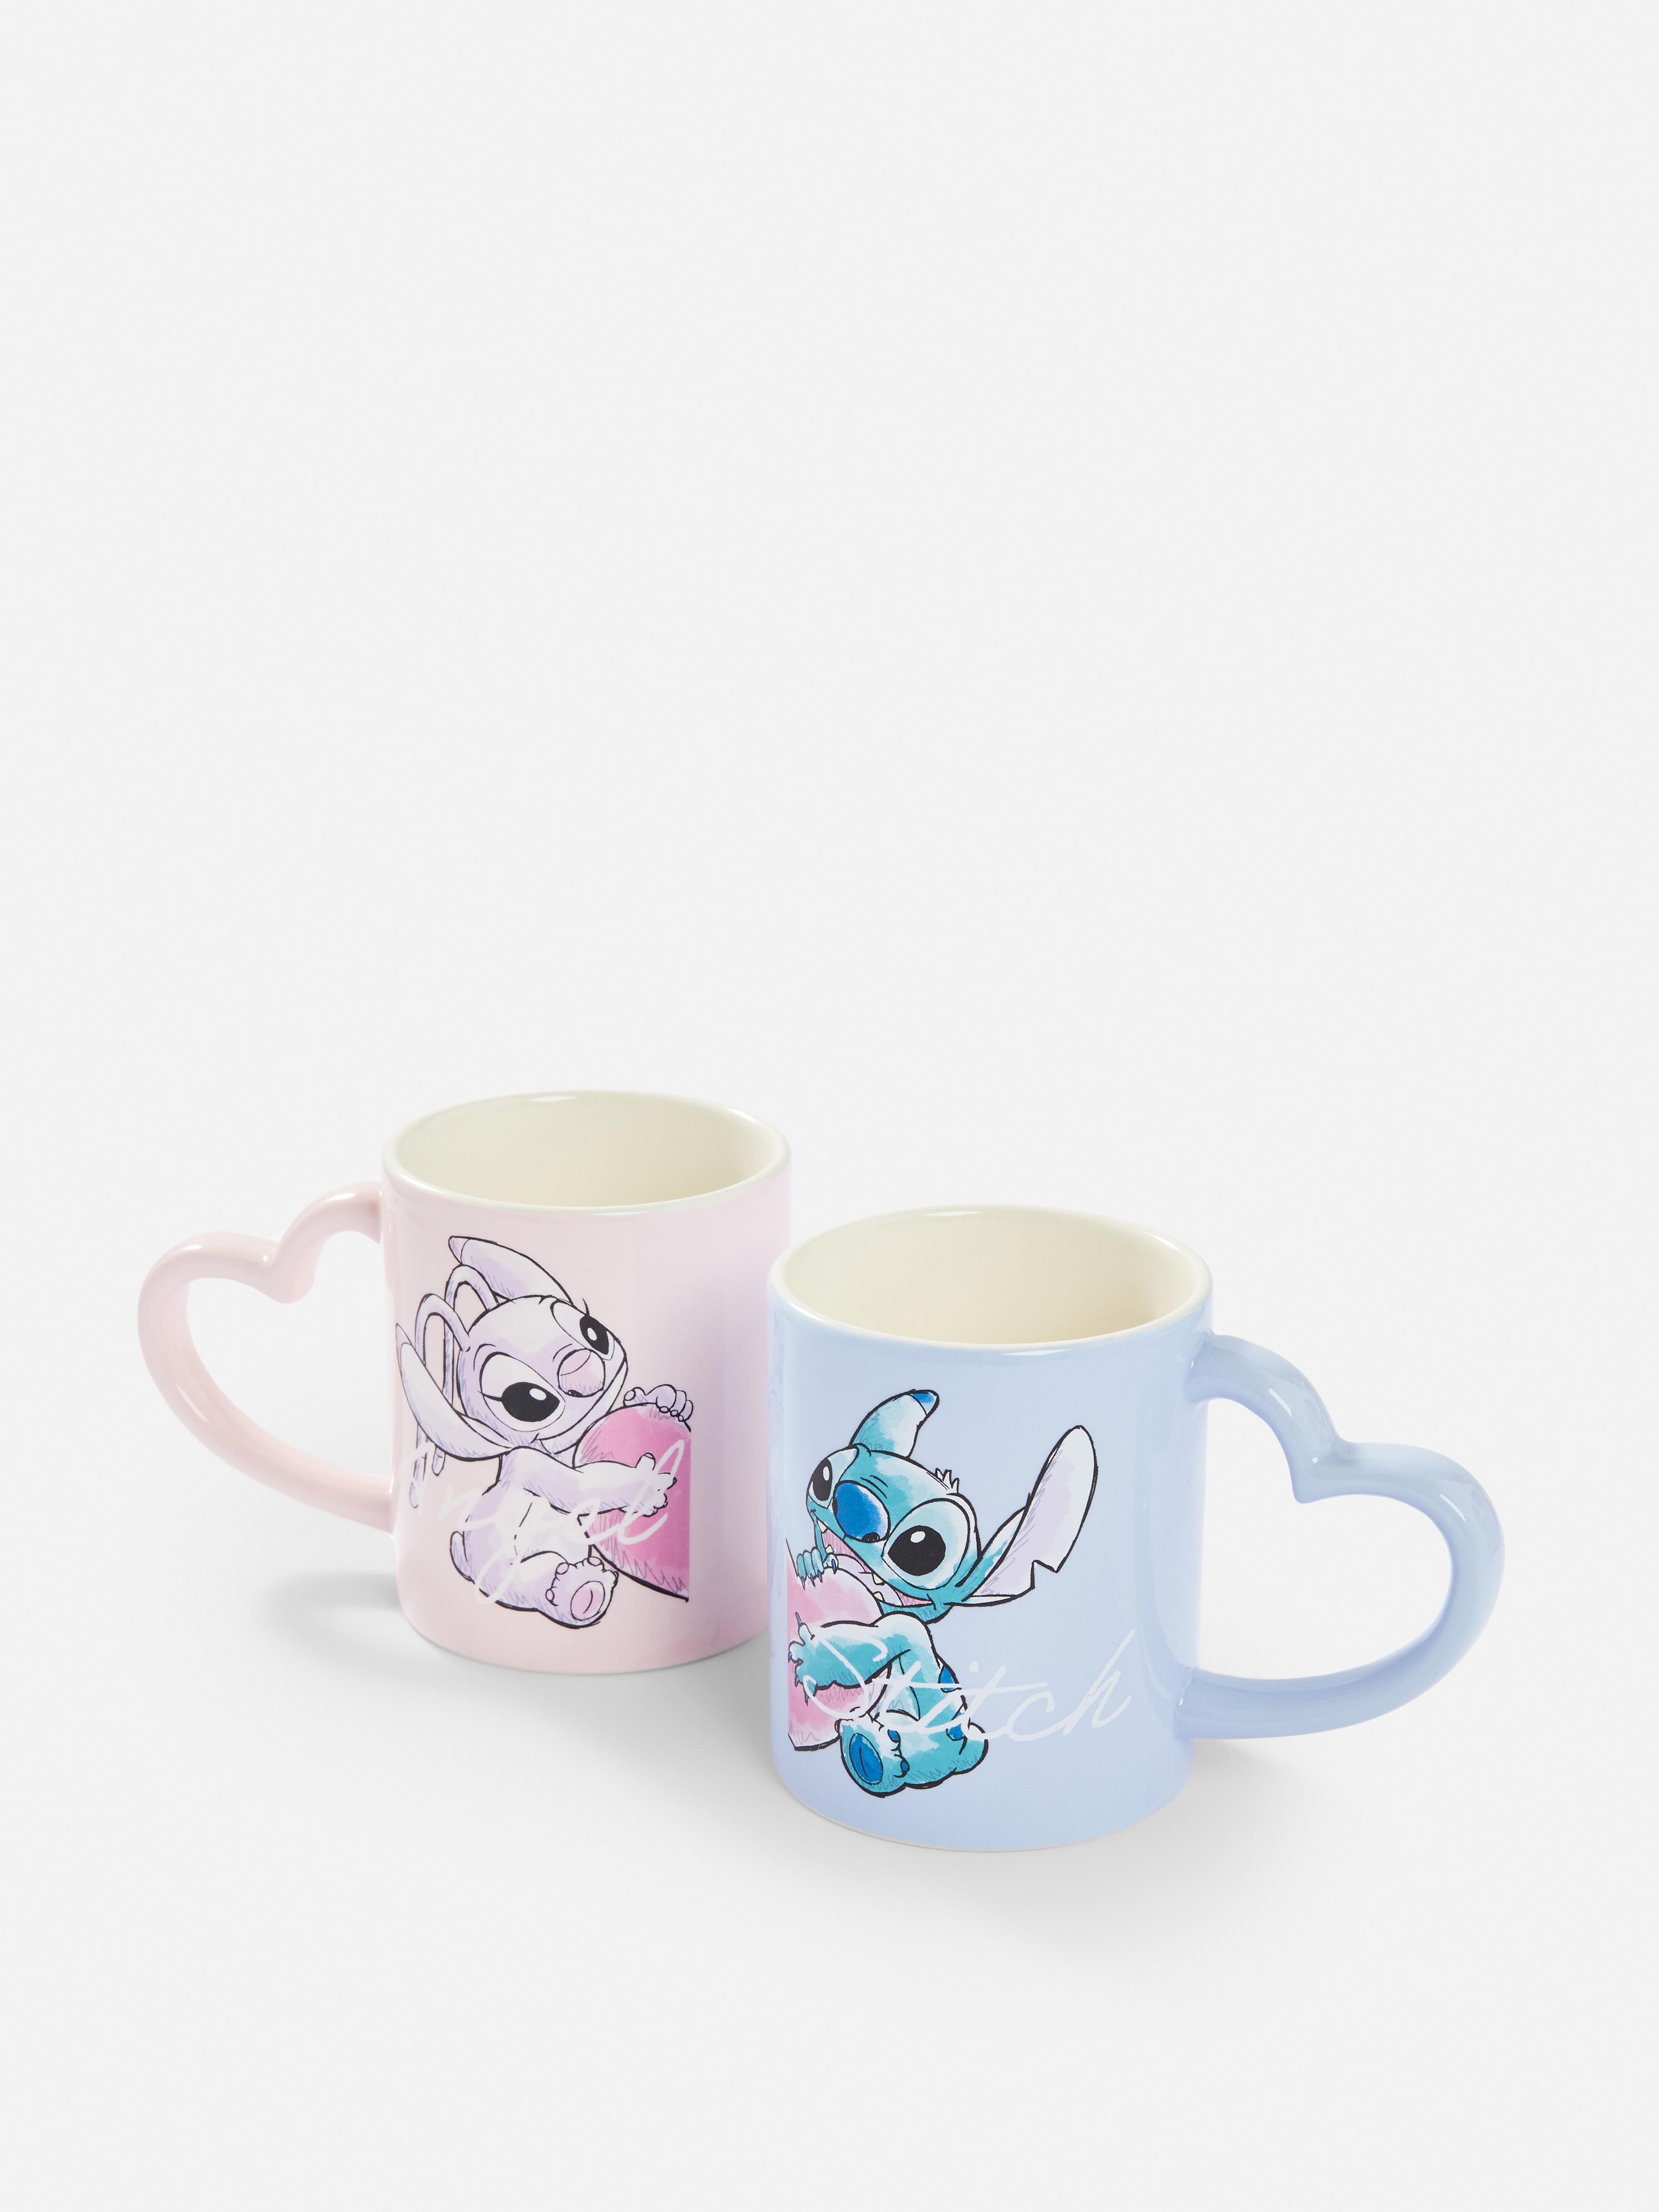 Disney's Lilo & Stitch Mug Set